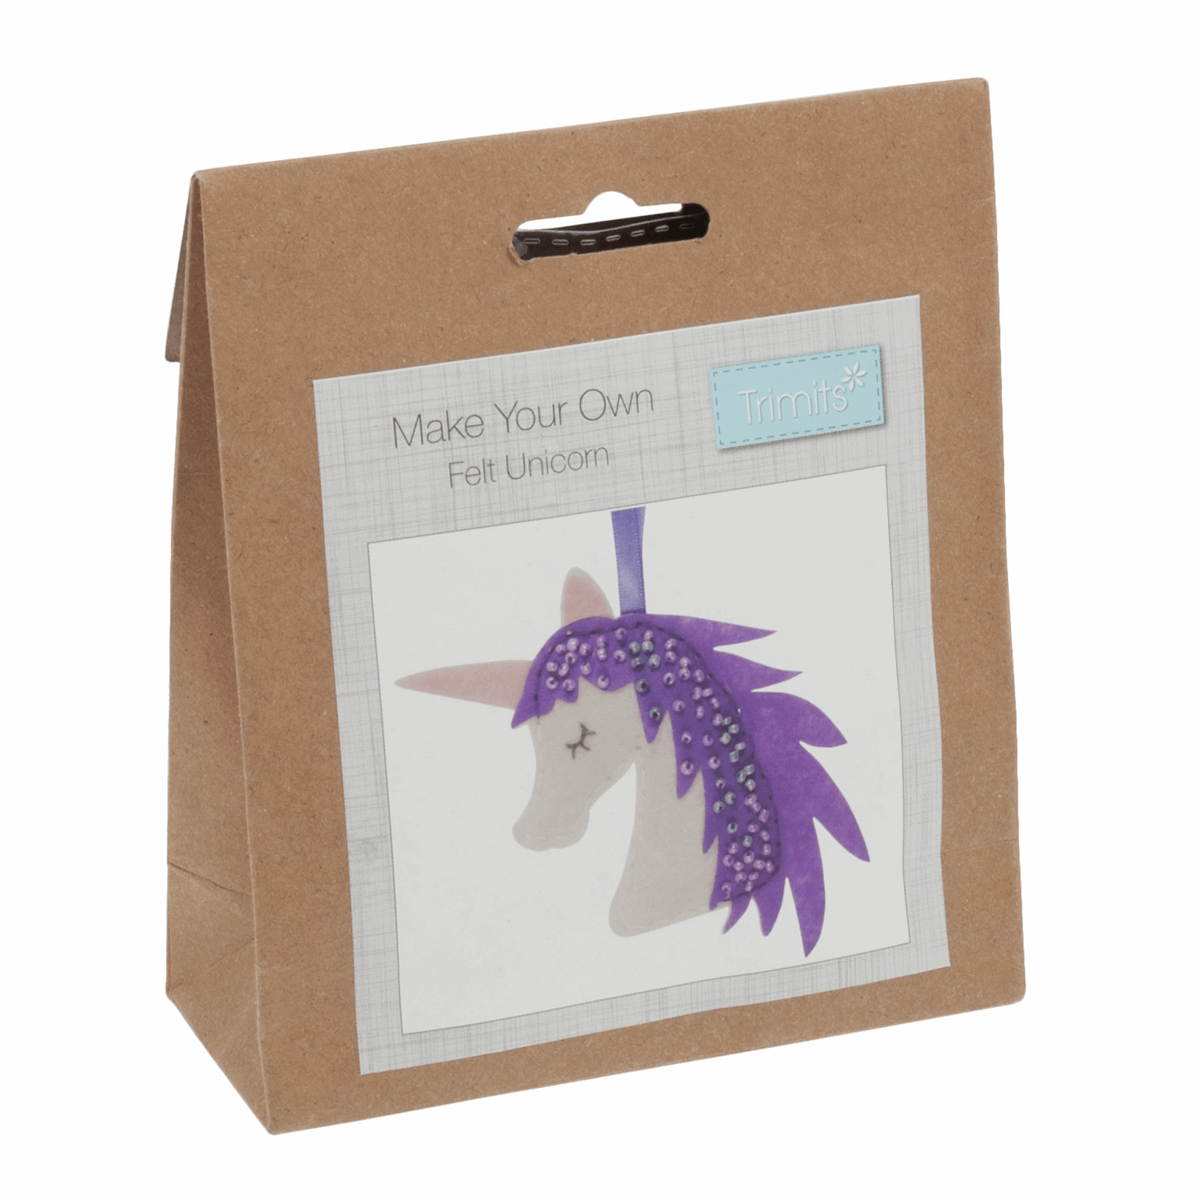 Felt Unicorn Decoration Kits